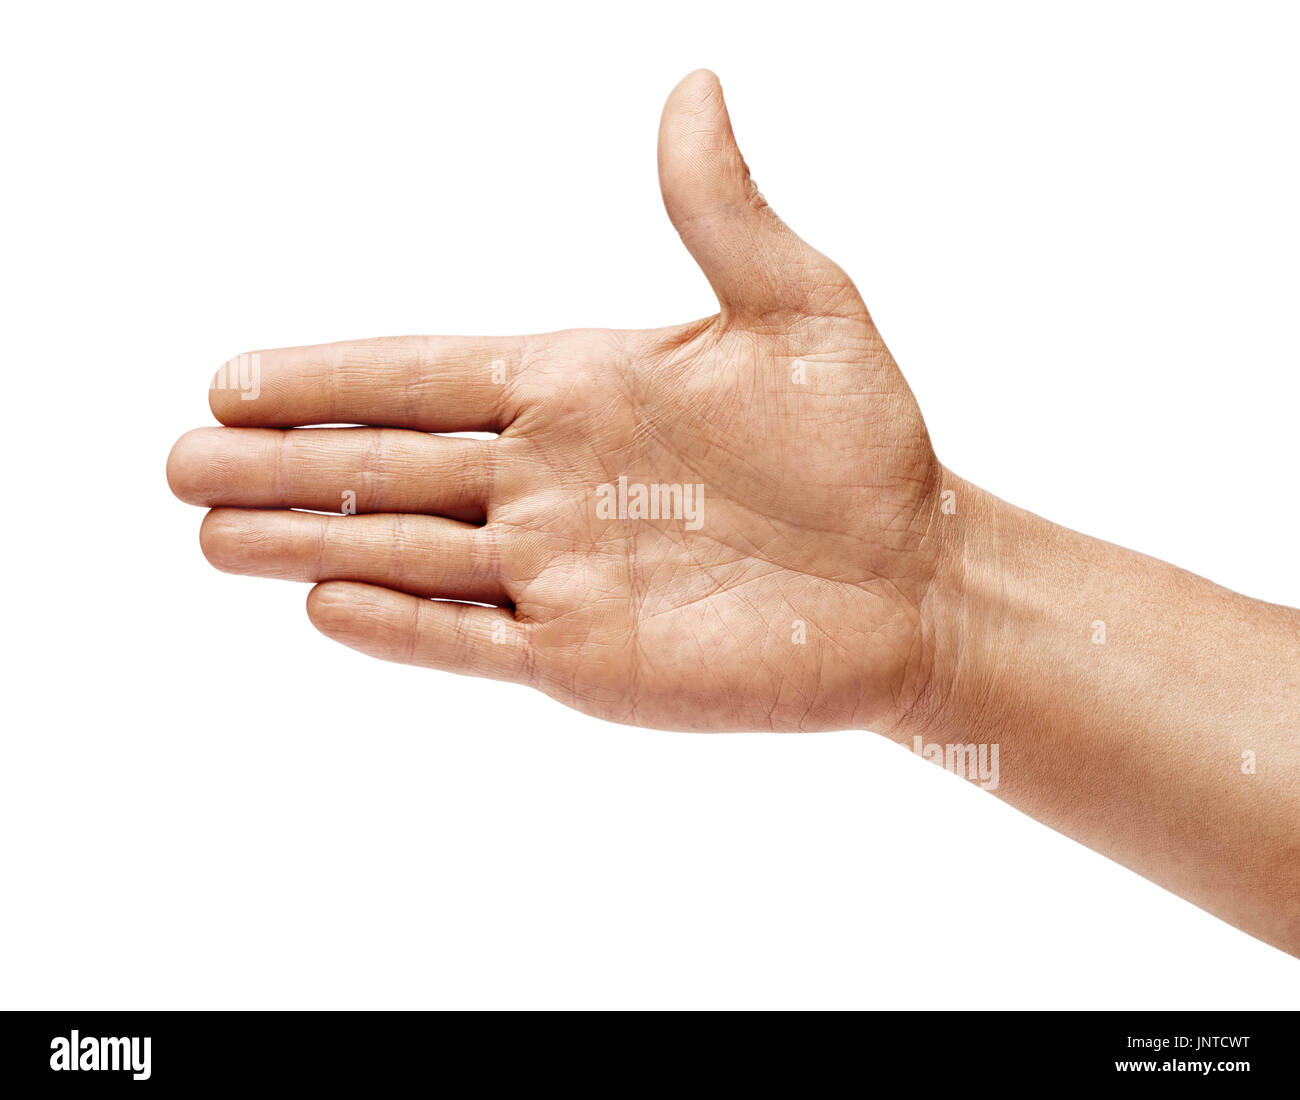 Mannes Hand ausgestreckt in Gruß isolierten auf weißen Hintergrund. Hautnah. Hohe Auflösung Stockfoto